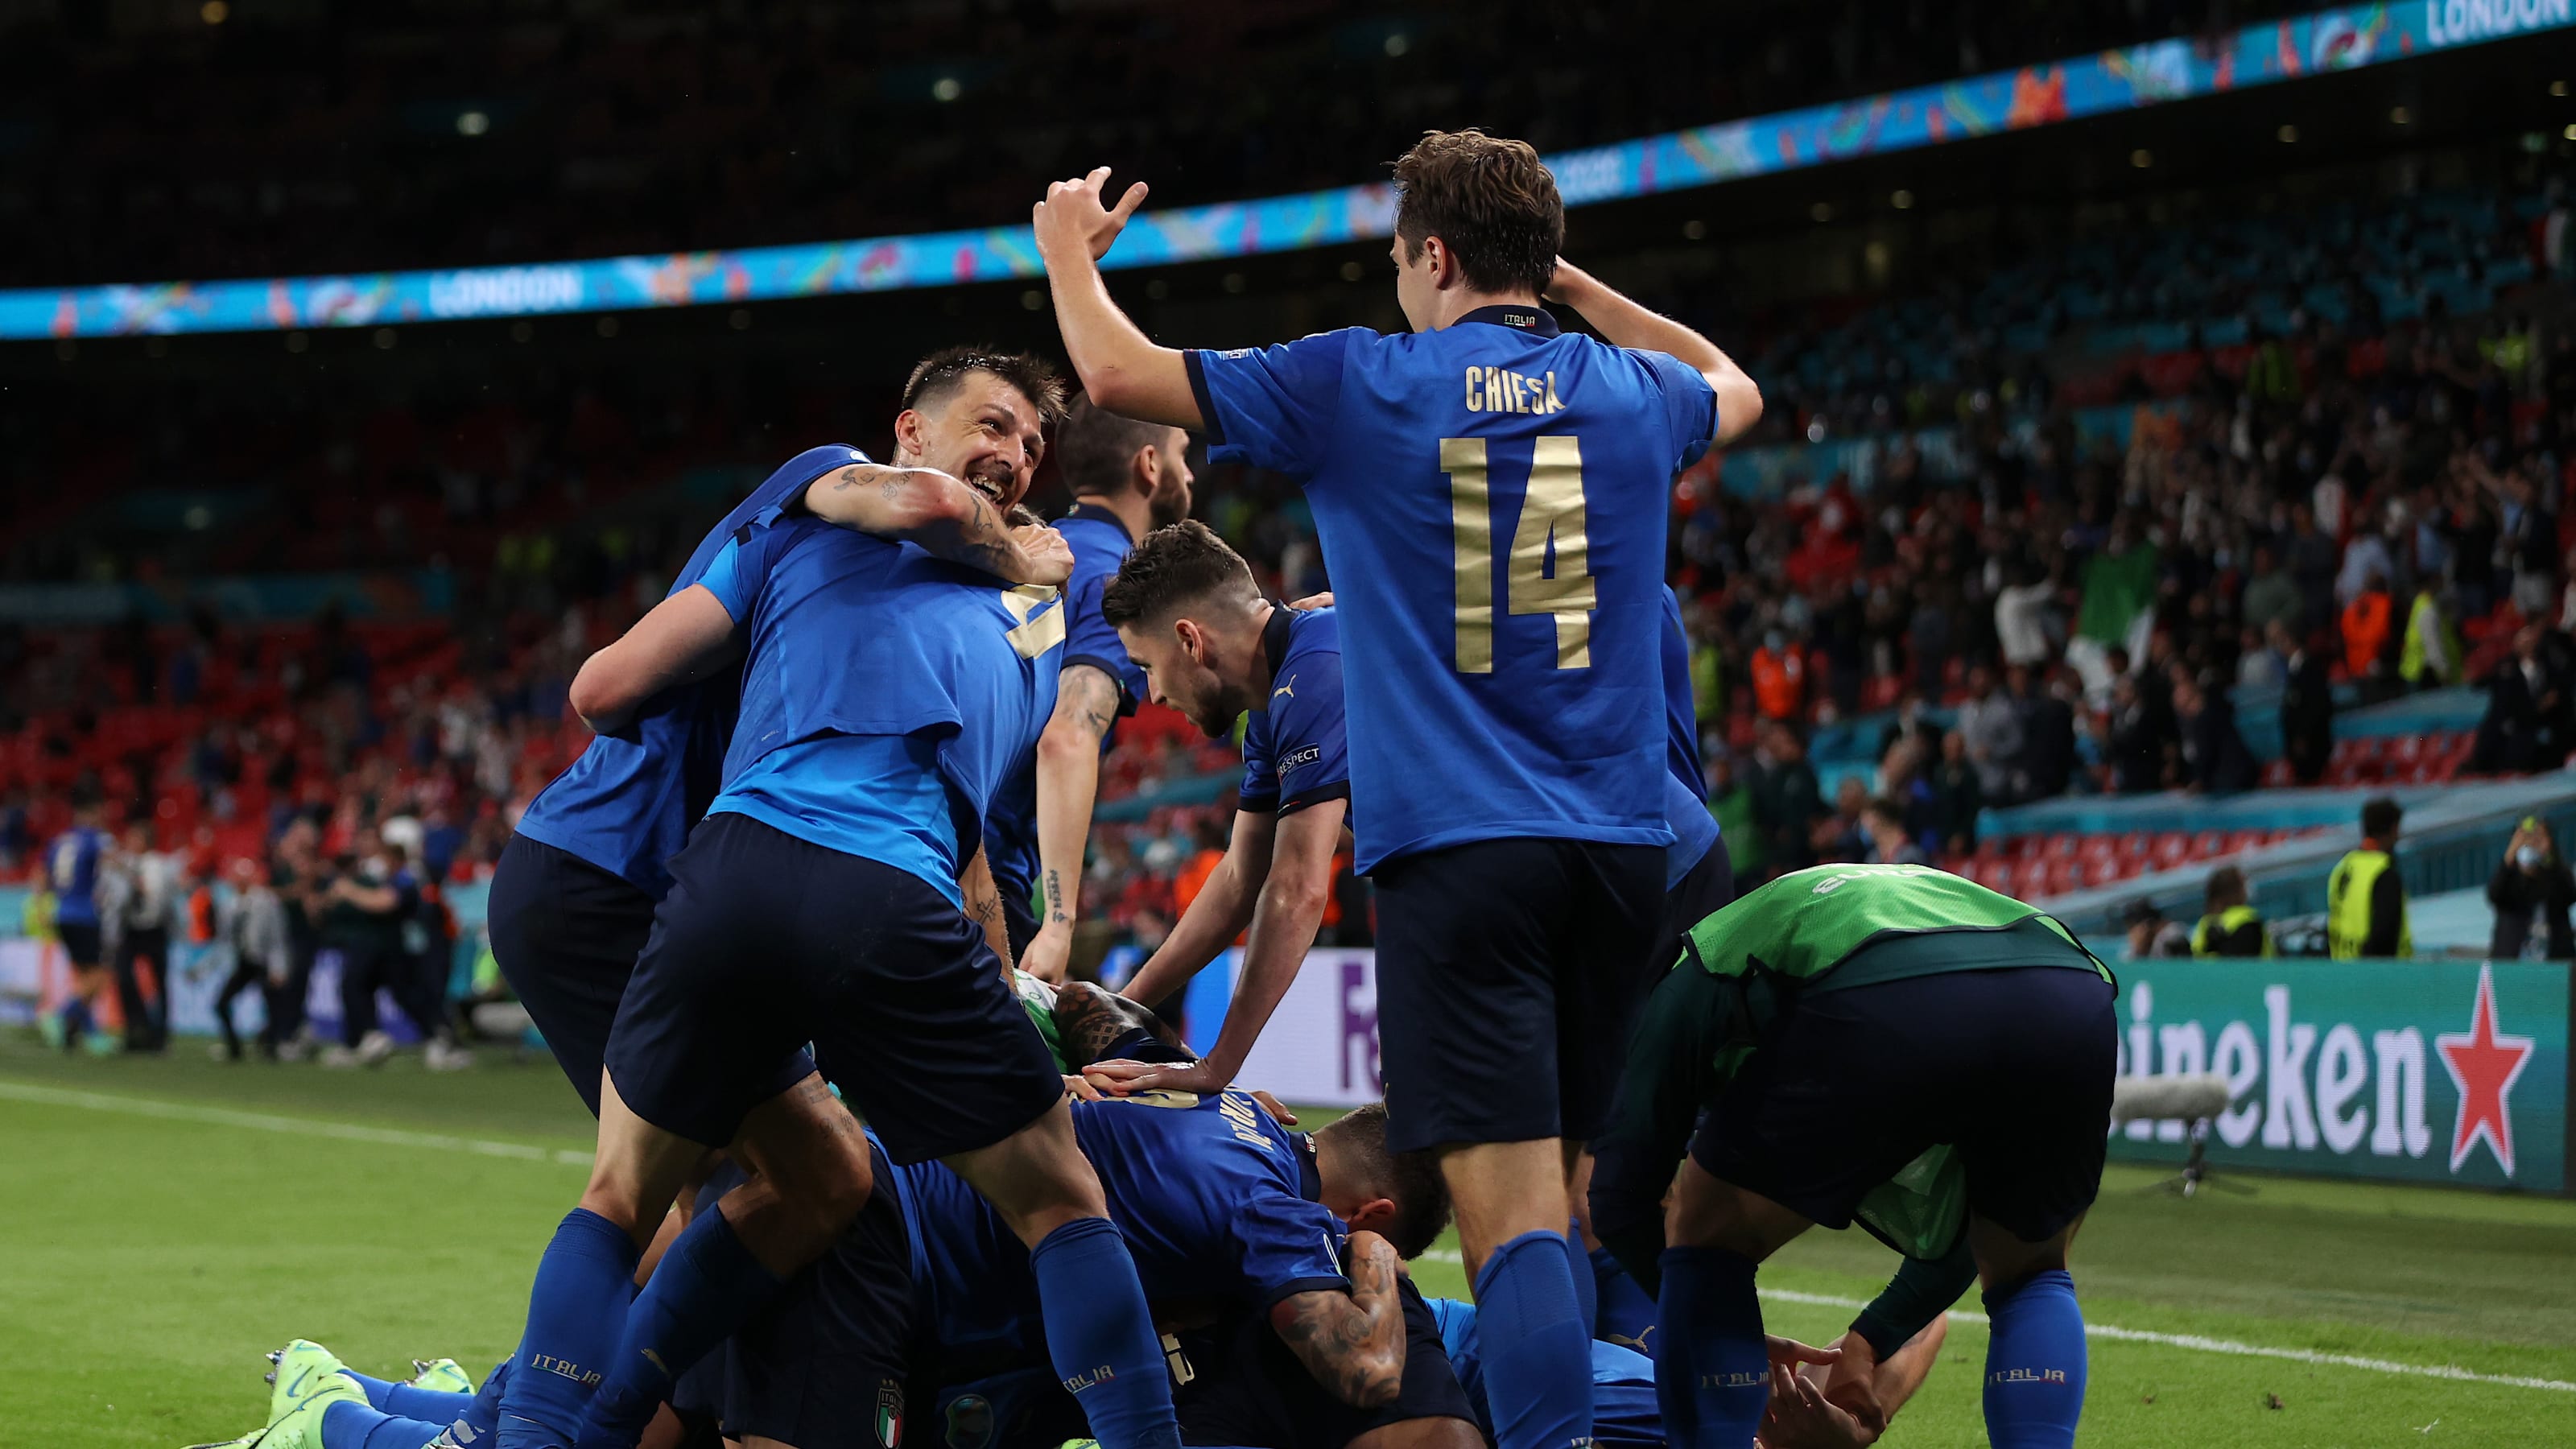 7月7 8日 サッカー欧州選手権準決勝の放送予定 イタリアとスペイン イングランドとデンマークが対戦